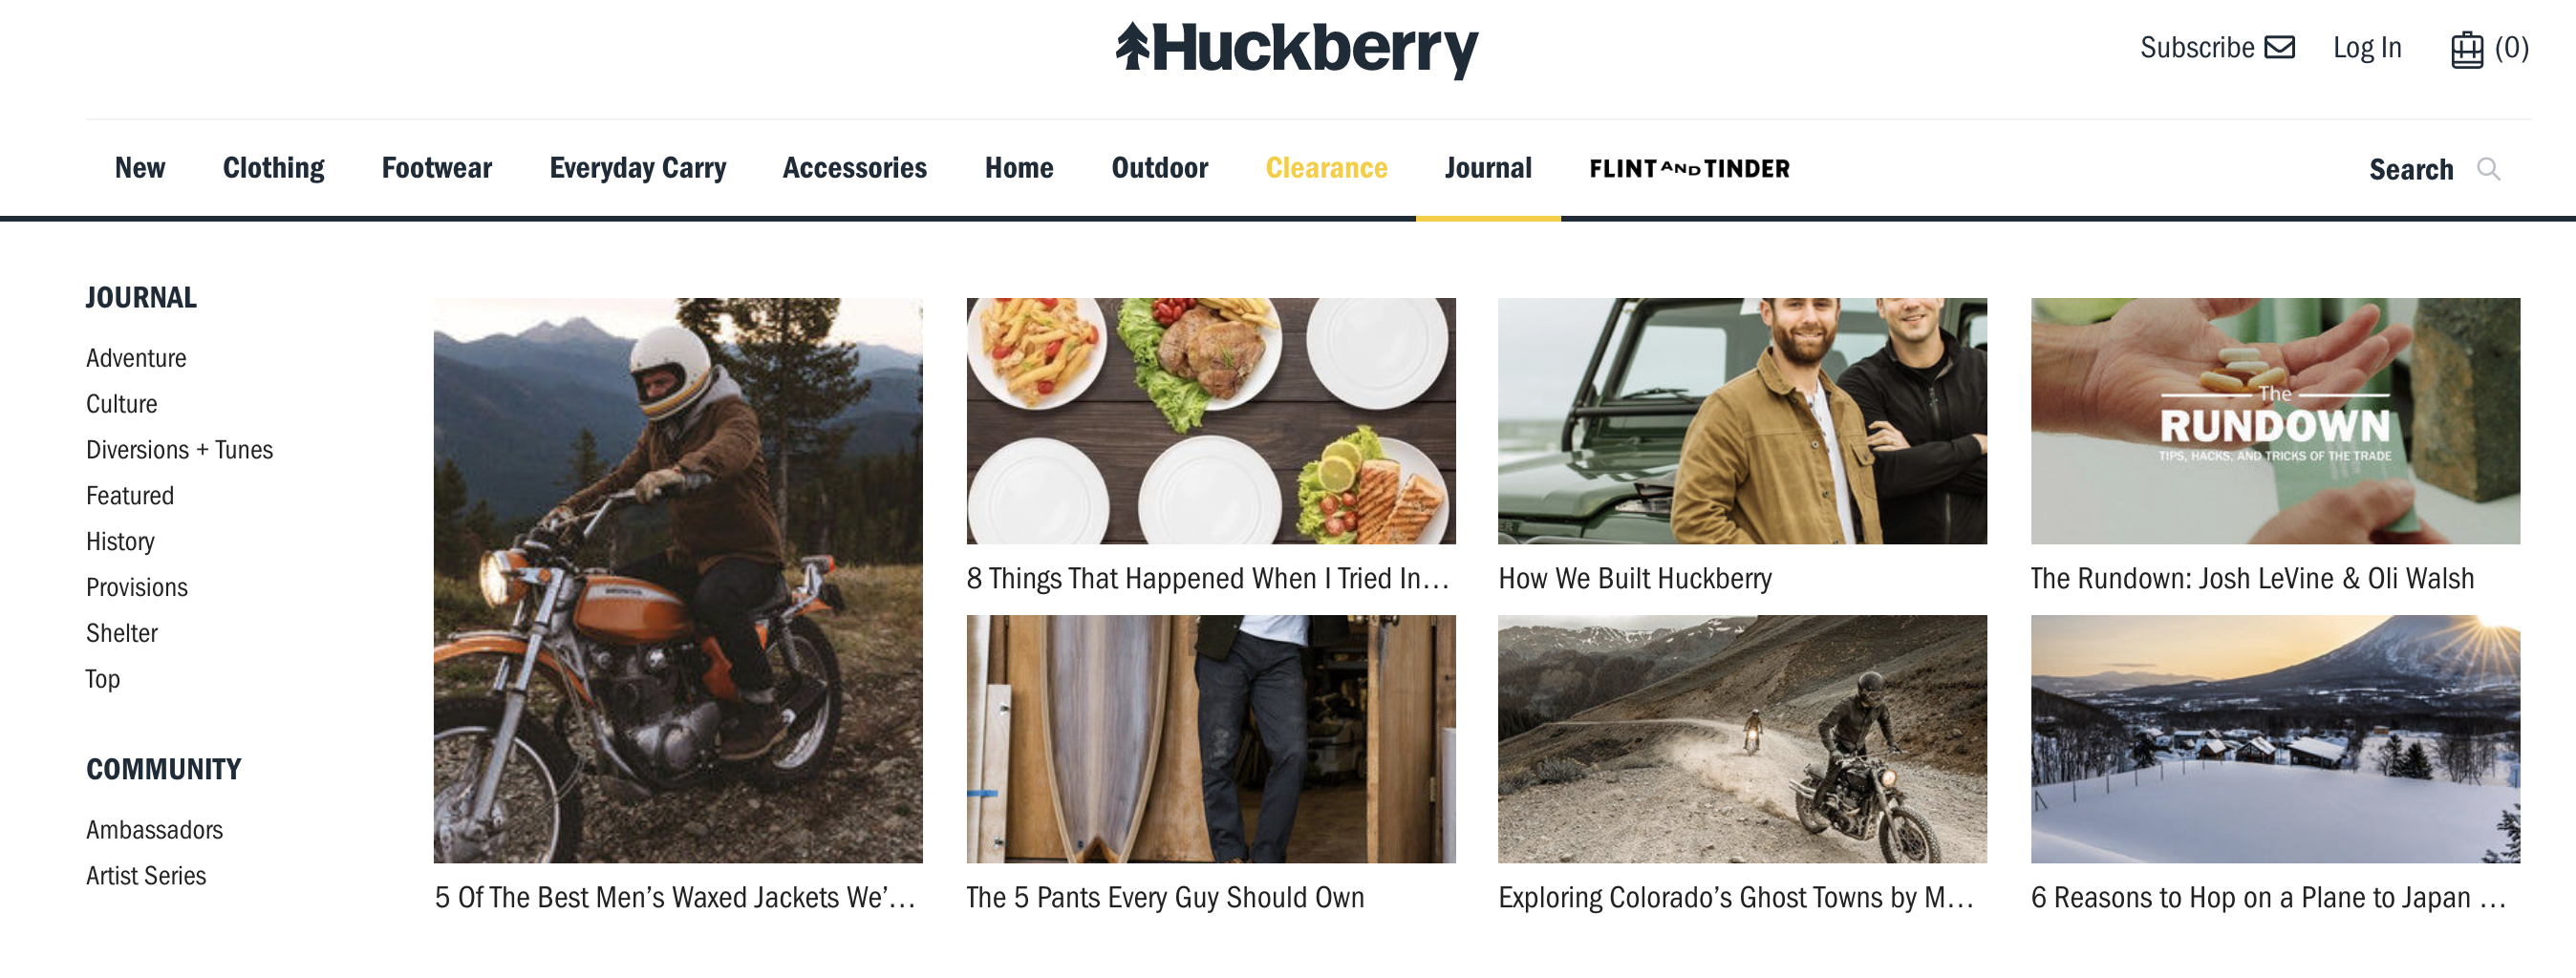 Huckberry website